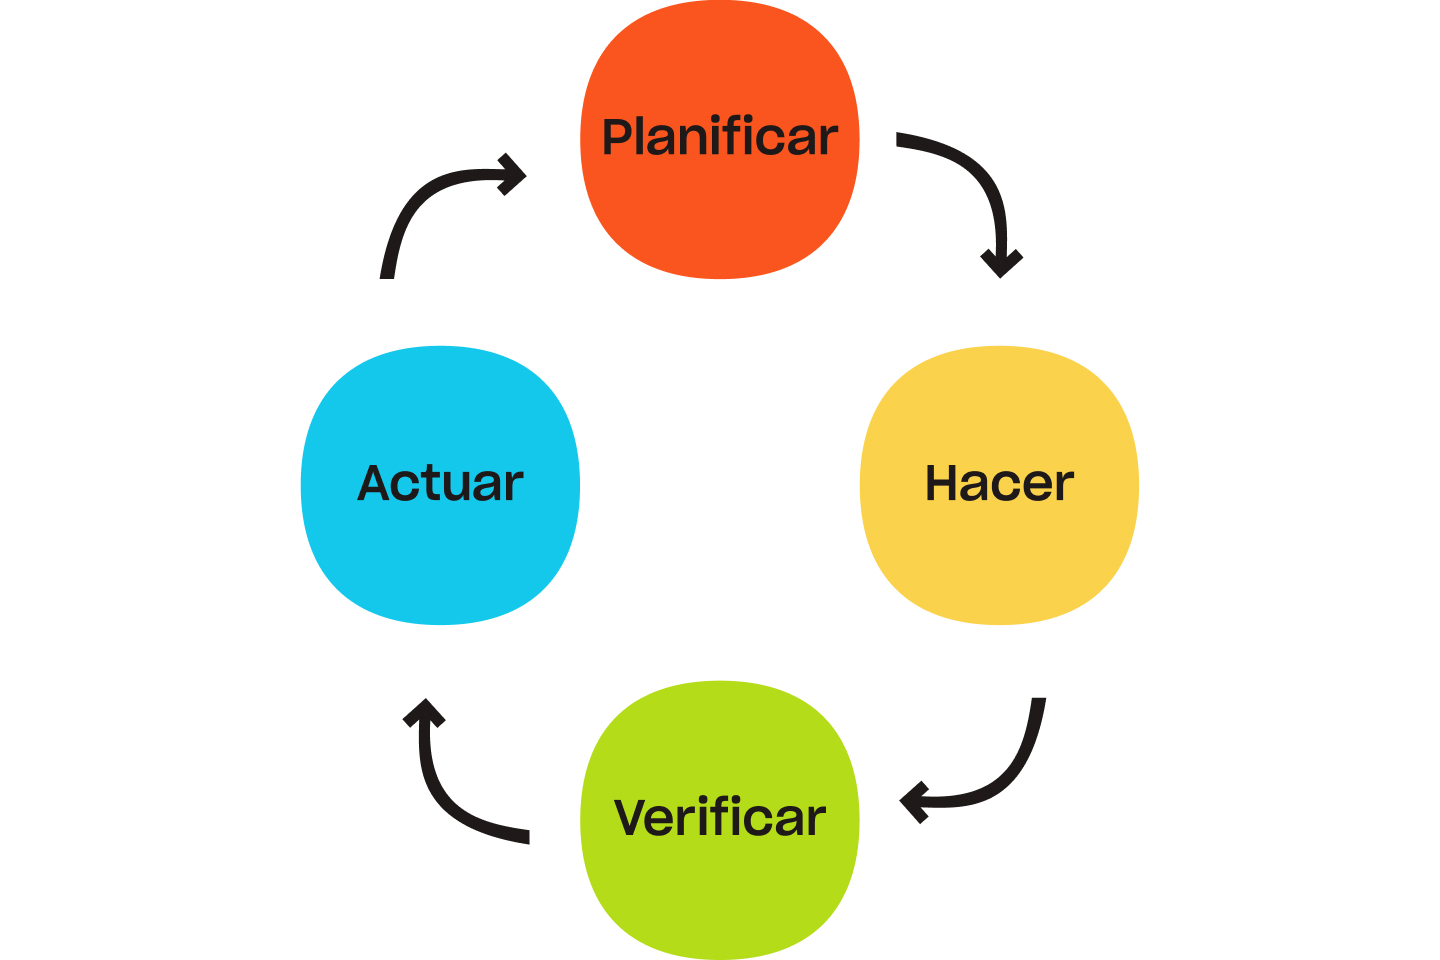 Ciclo planifica-haz-comprueba-actúa, en el que se muestra un bucle de planificación, acción, comprobación y actuación.